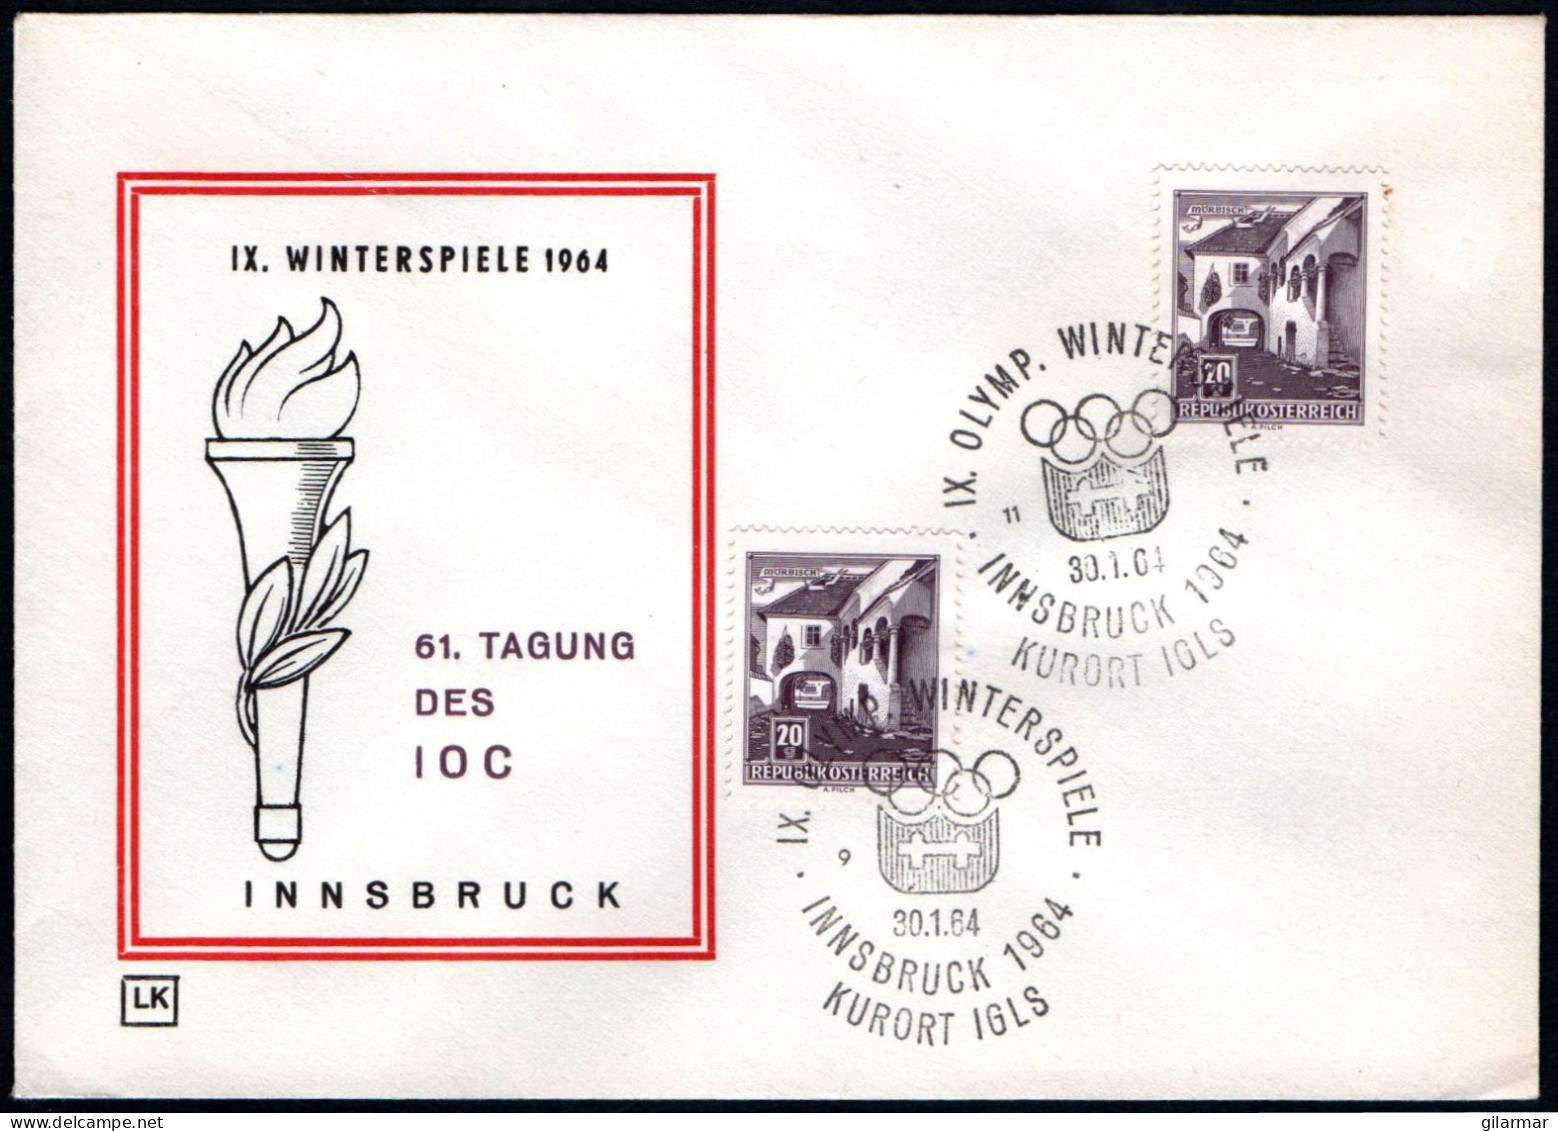 AUSTRIA KURORT IGLS 1964 - IX OLYMPIC WINTER GAMES - INNSBRUCK '64 - CANCELS # 9 & 11 - G - Winter 1964: Innsbruck